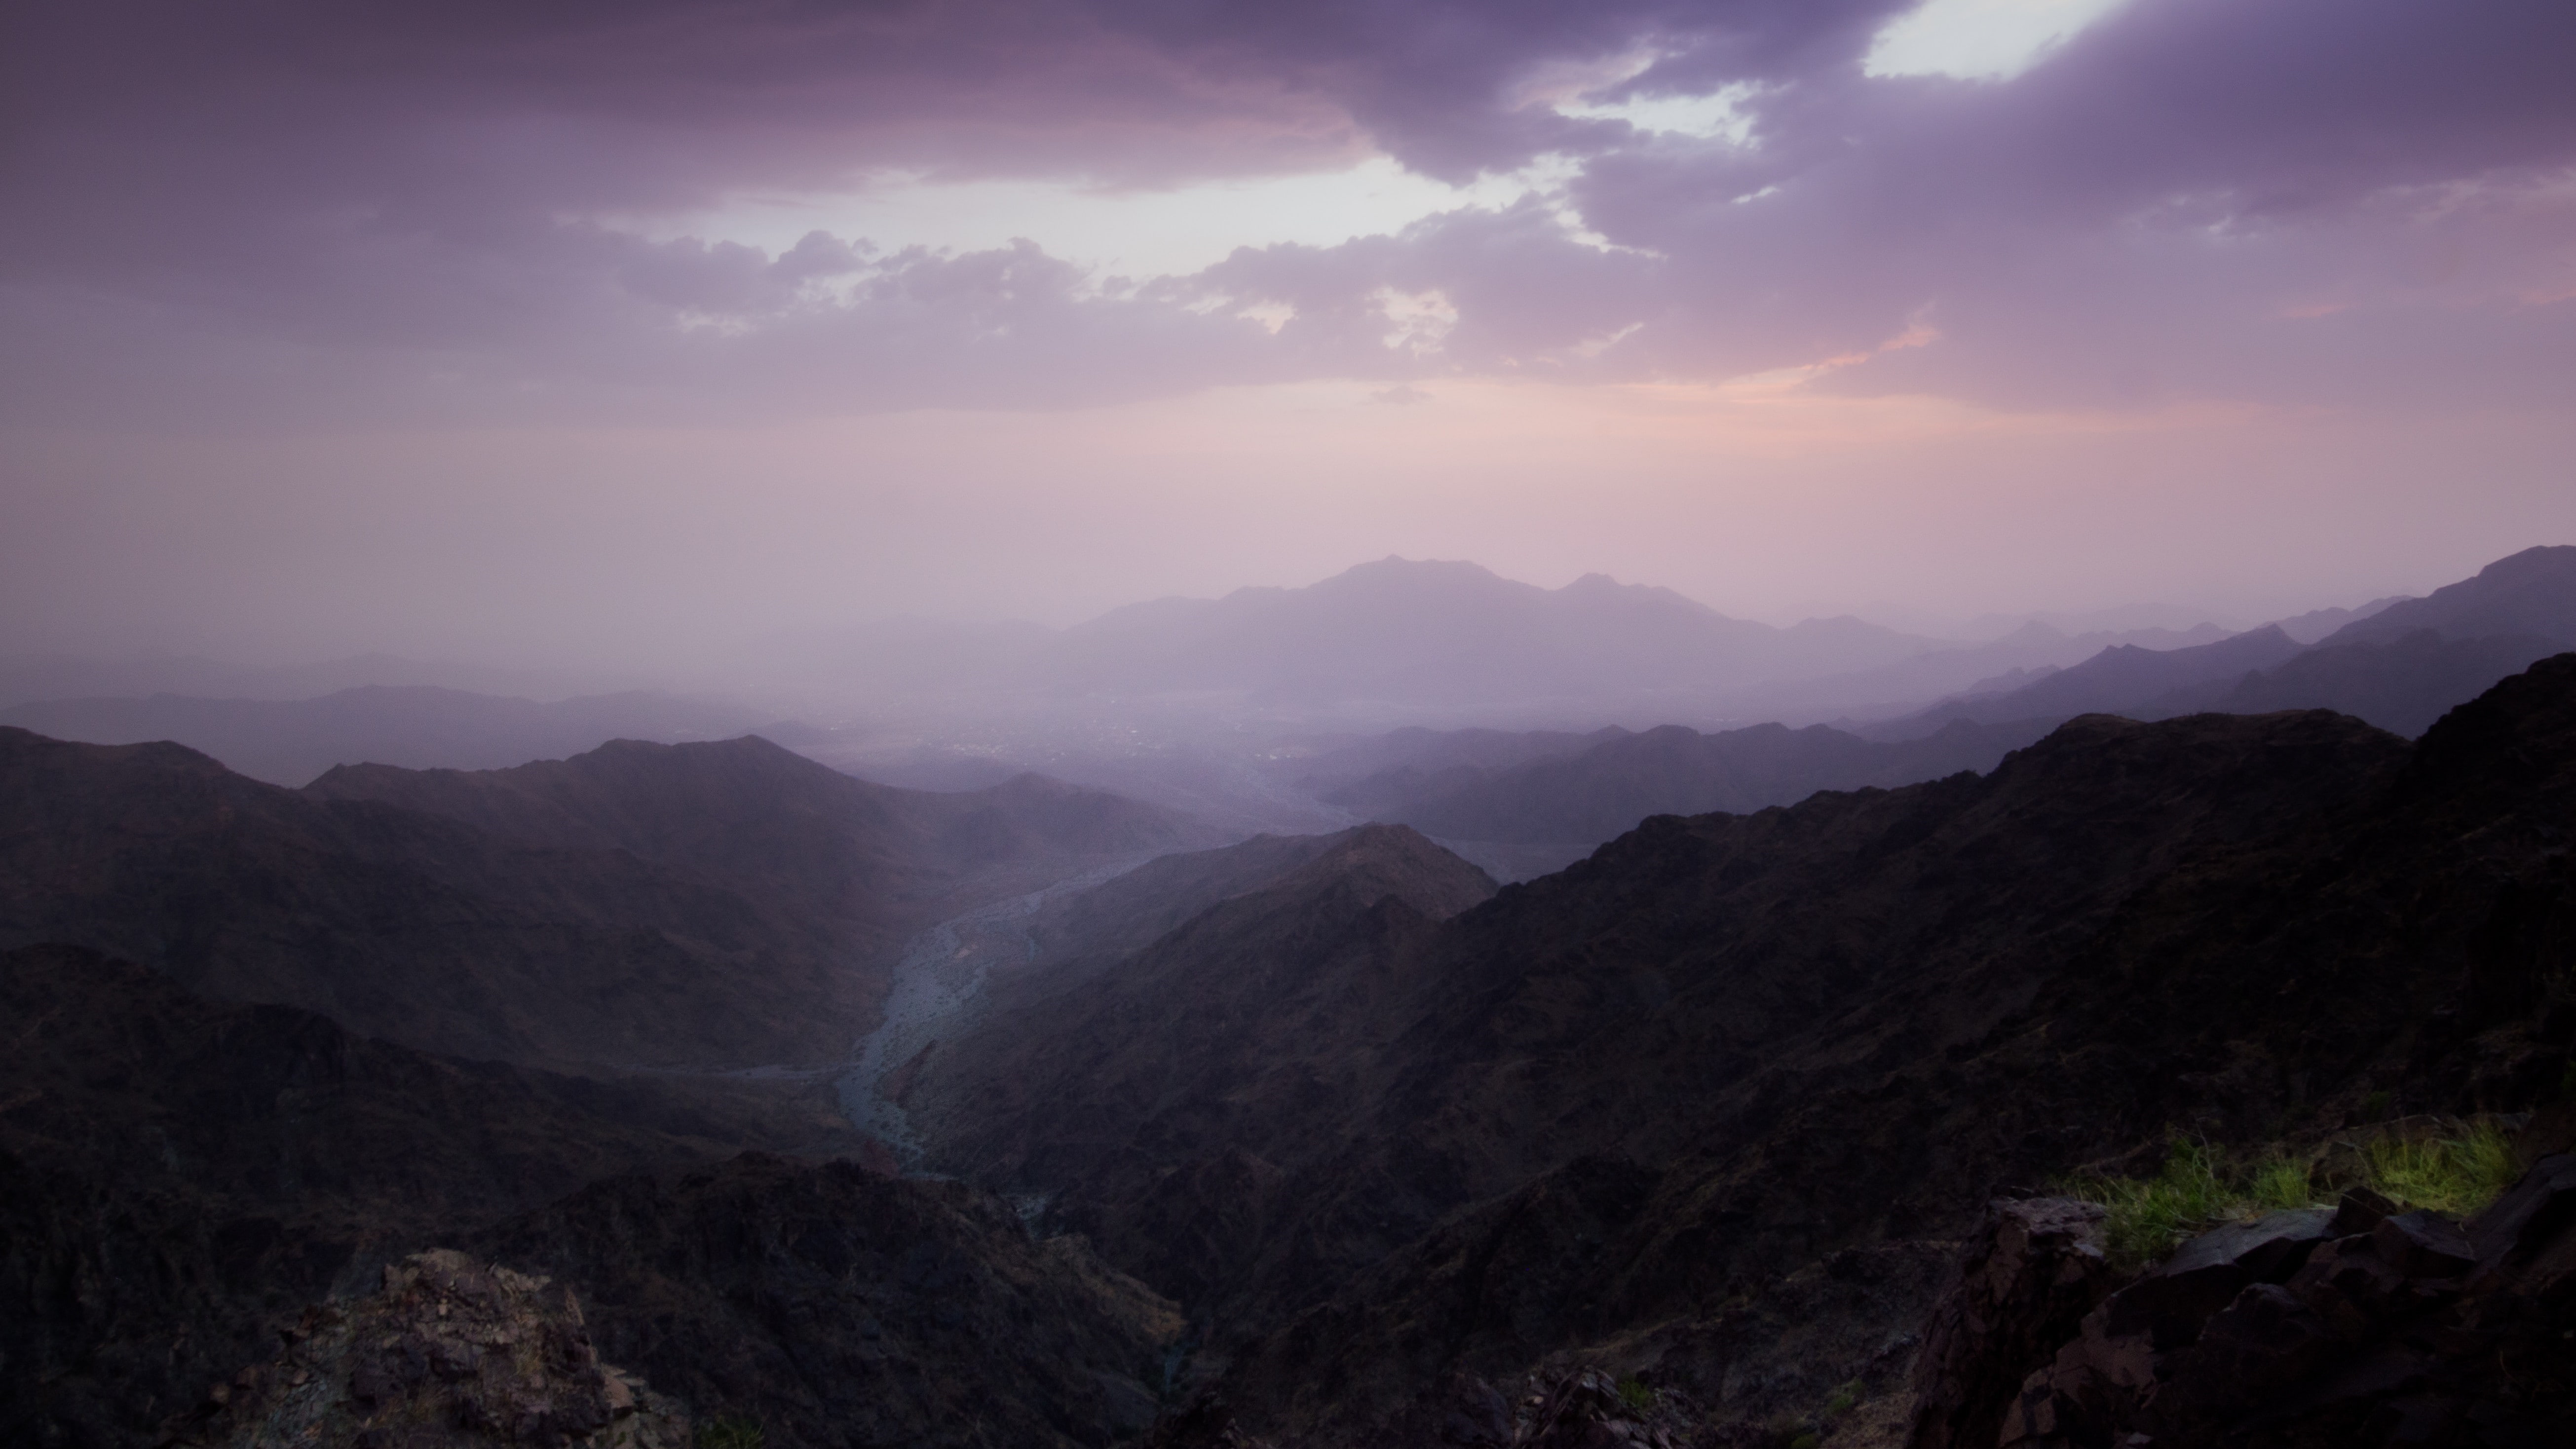 mountain al hada saudi arabia makkah clouds purple sky mist